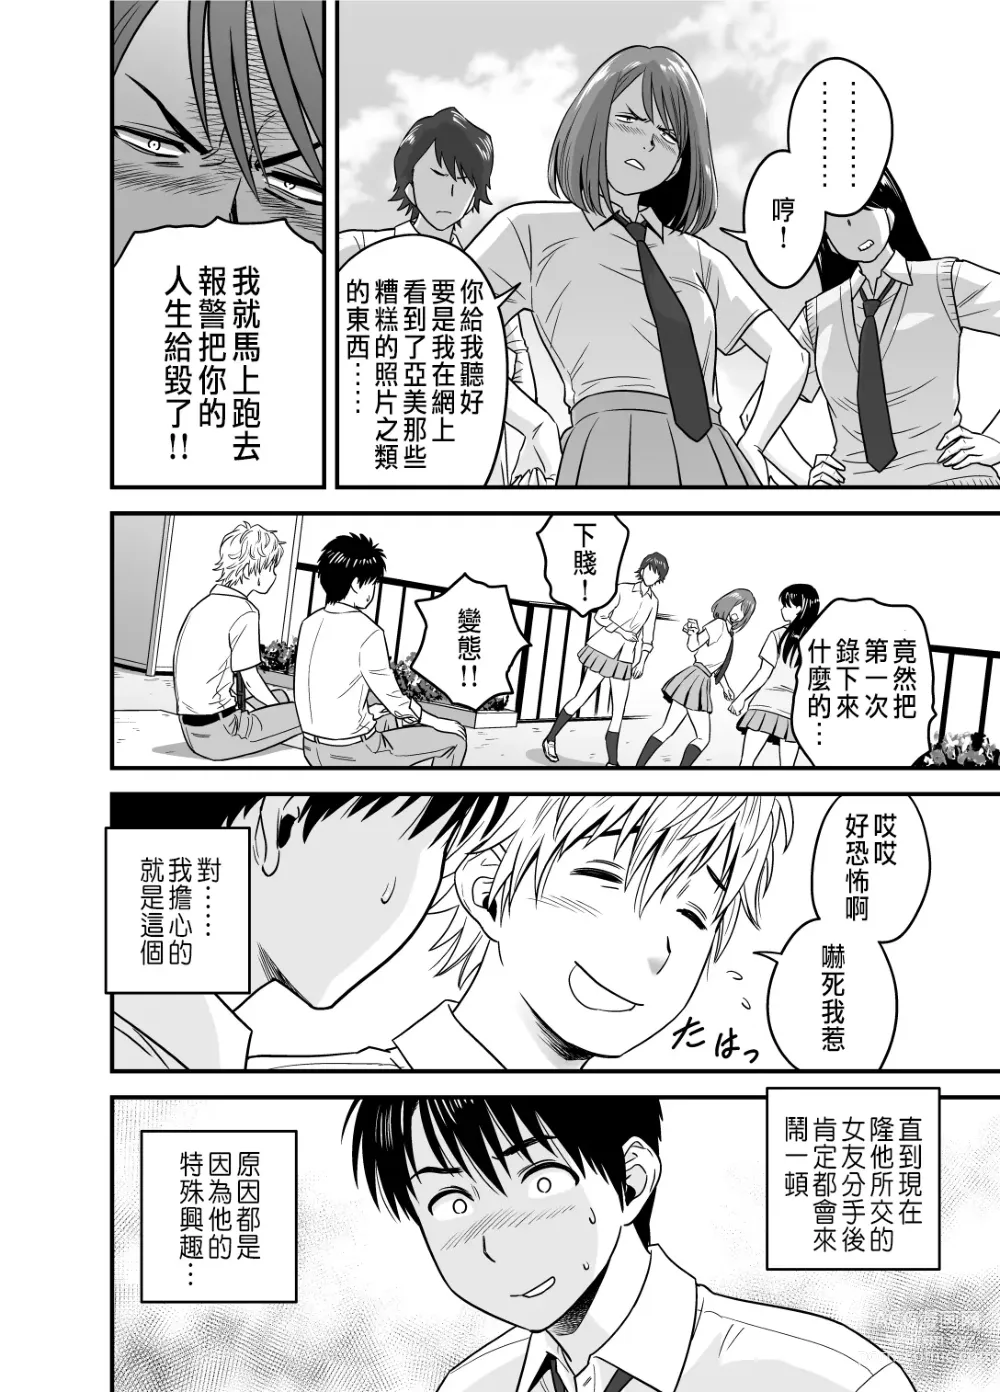 Page 22 of manga 母が友カノになったので1~3